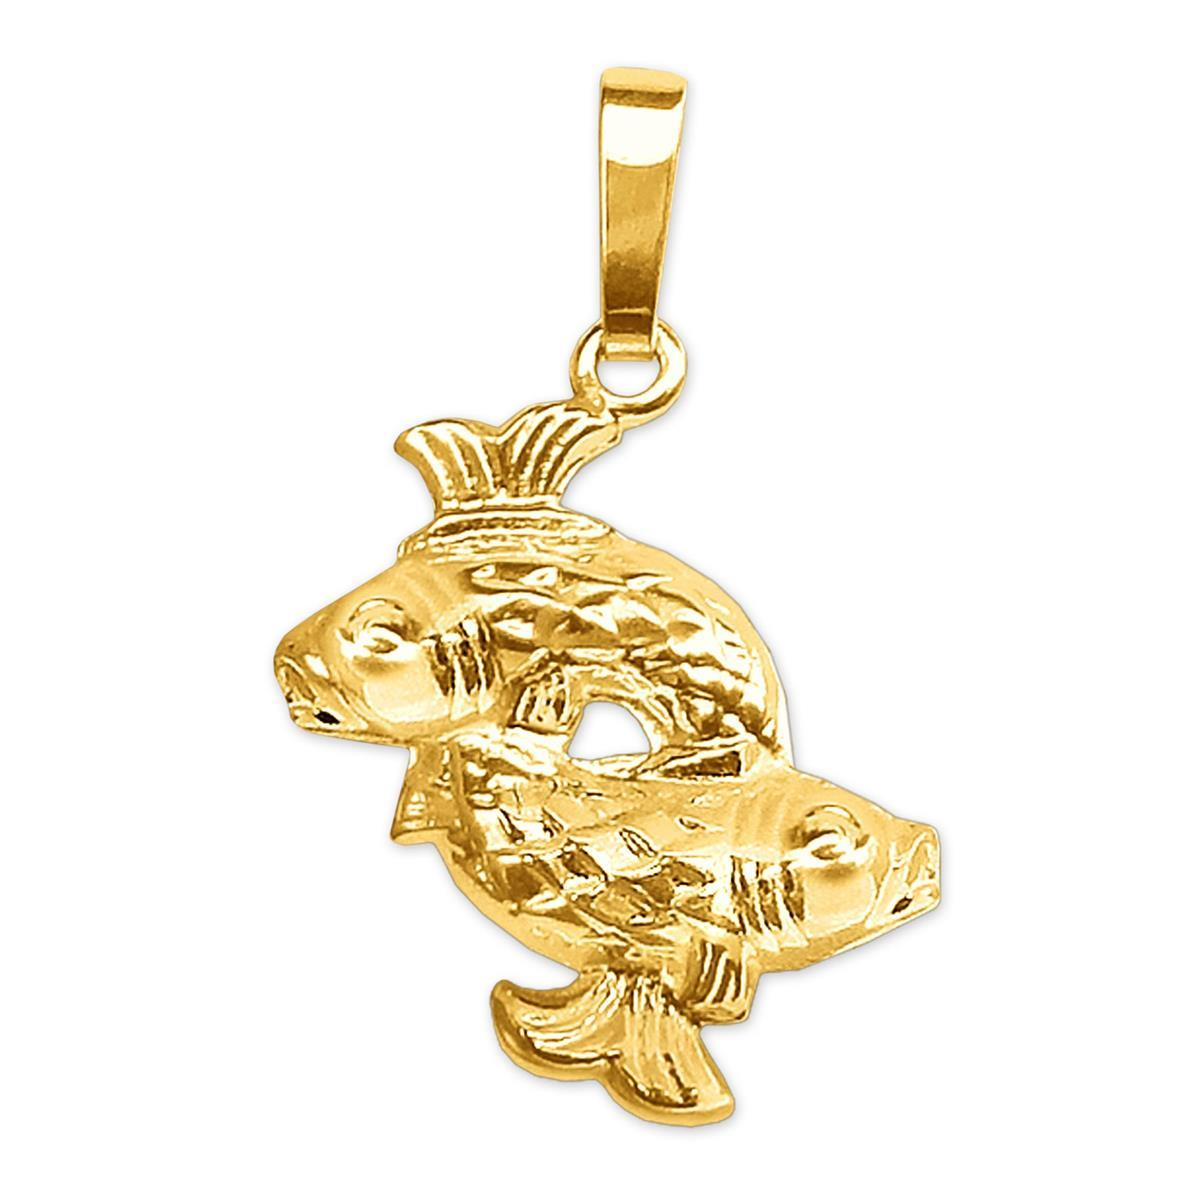 Goldener Sternzeichen Anhänger 16 x 14 mm Fische glänzend und beidseitig plastische Form 333 GOLD 8 KARAT